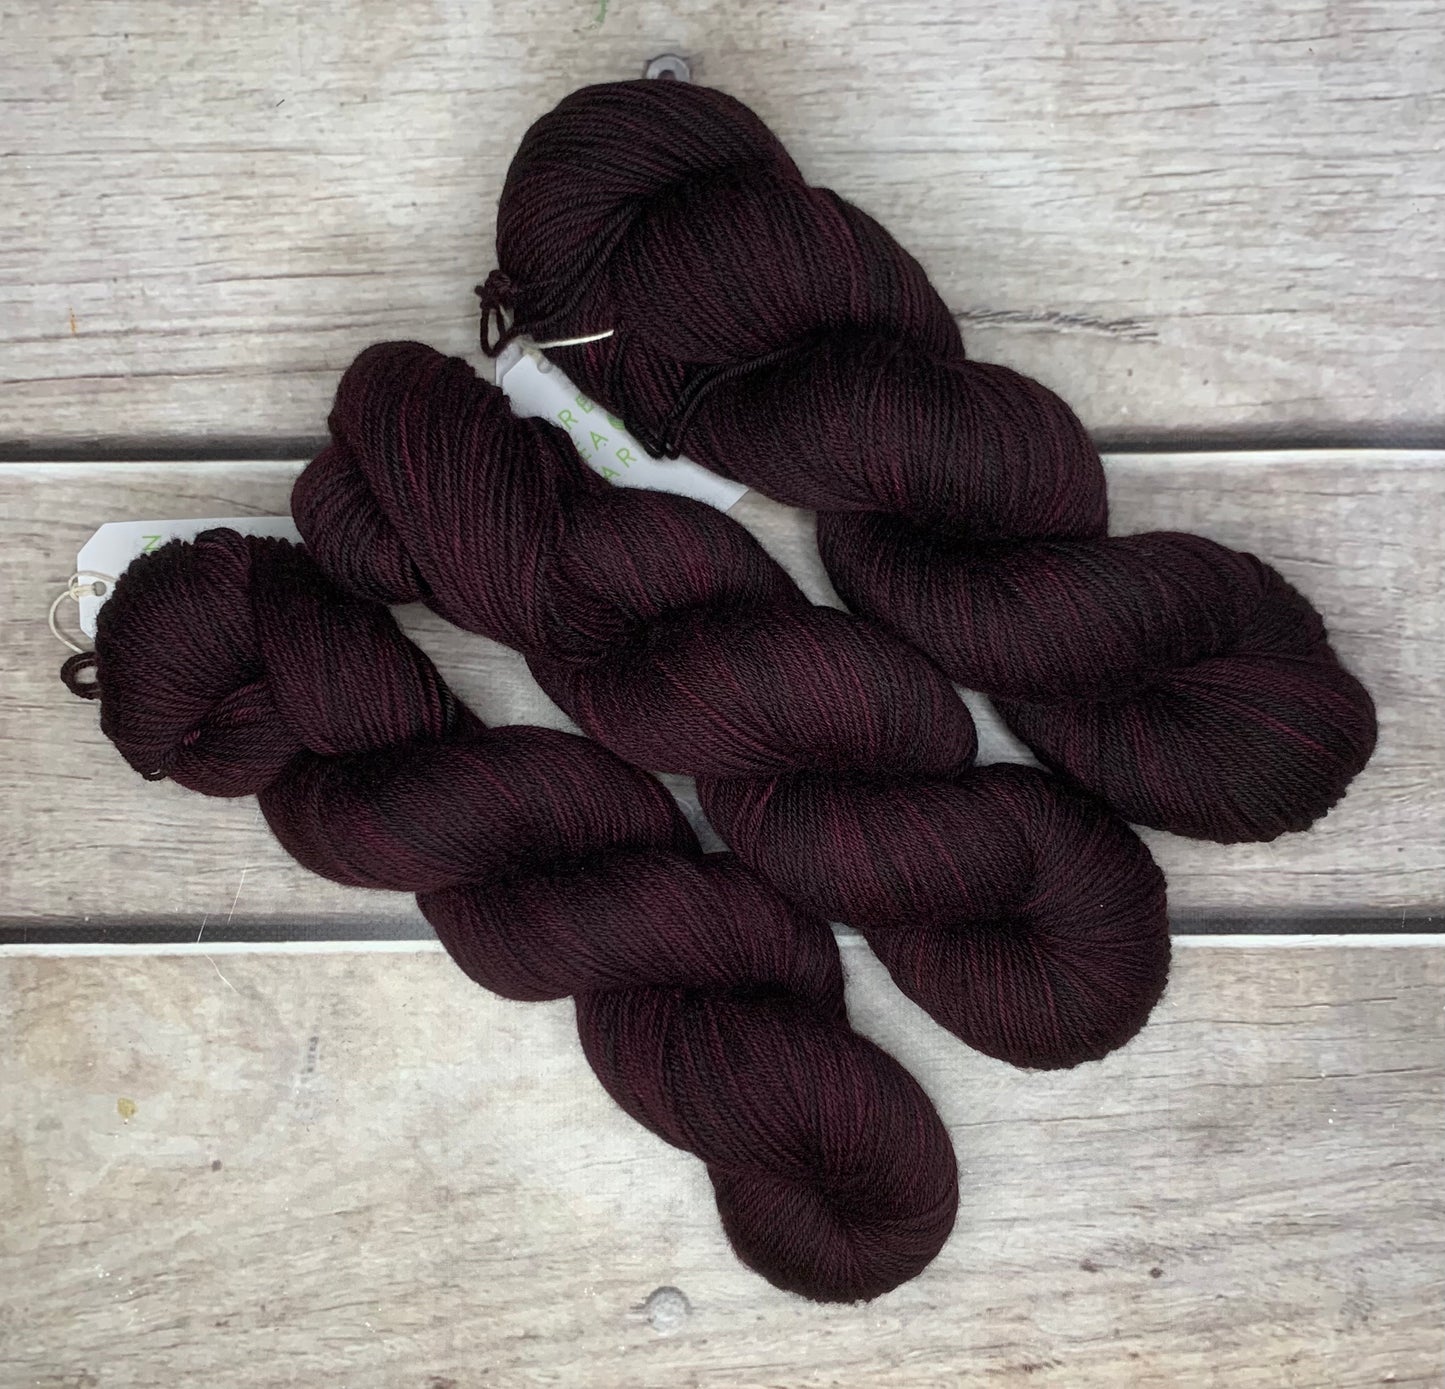 Black Cherry - 4 ply merino/nylon sock yarn - Darjeeling